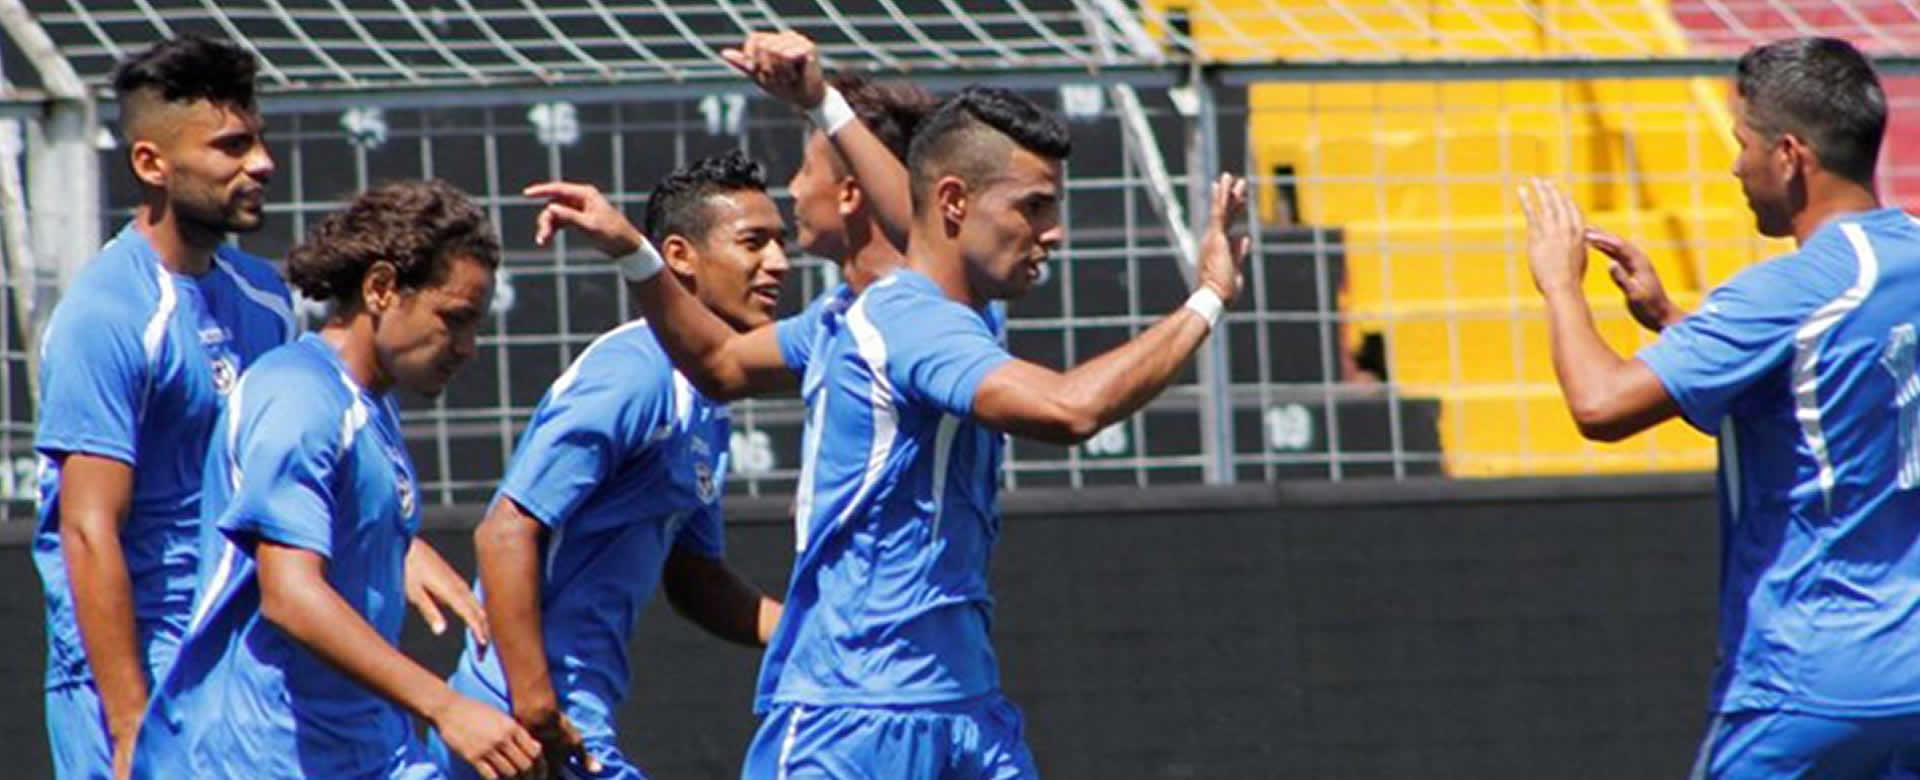 Futbolistas cubanos a sólo horas de arribar para amistoso contra Azul y Blanco